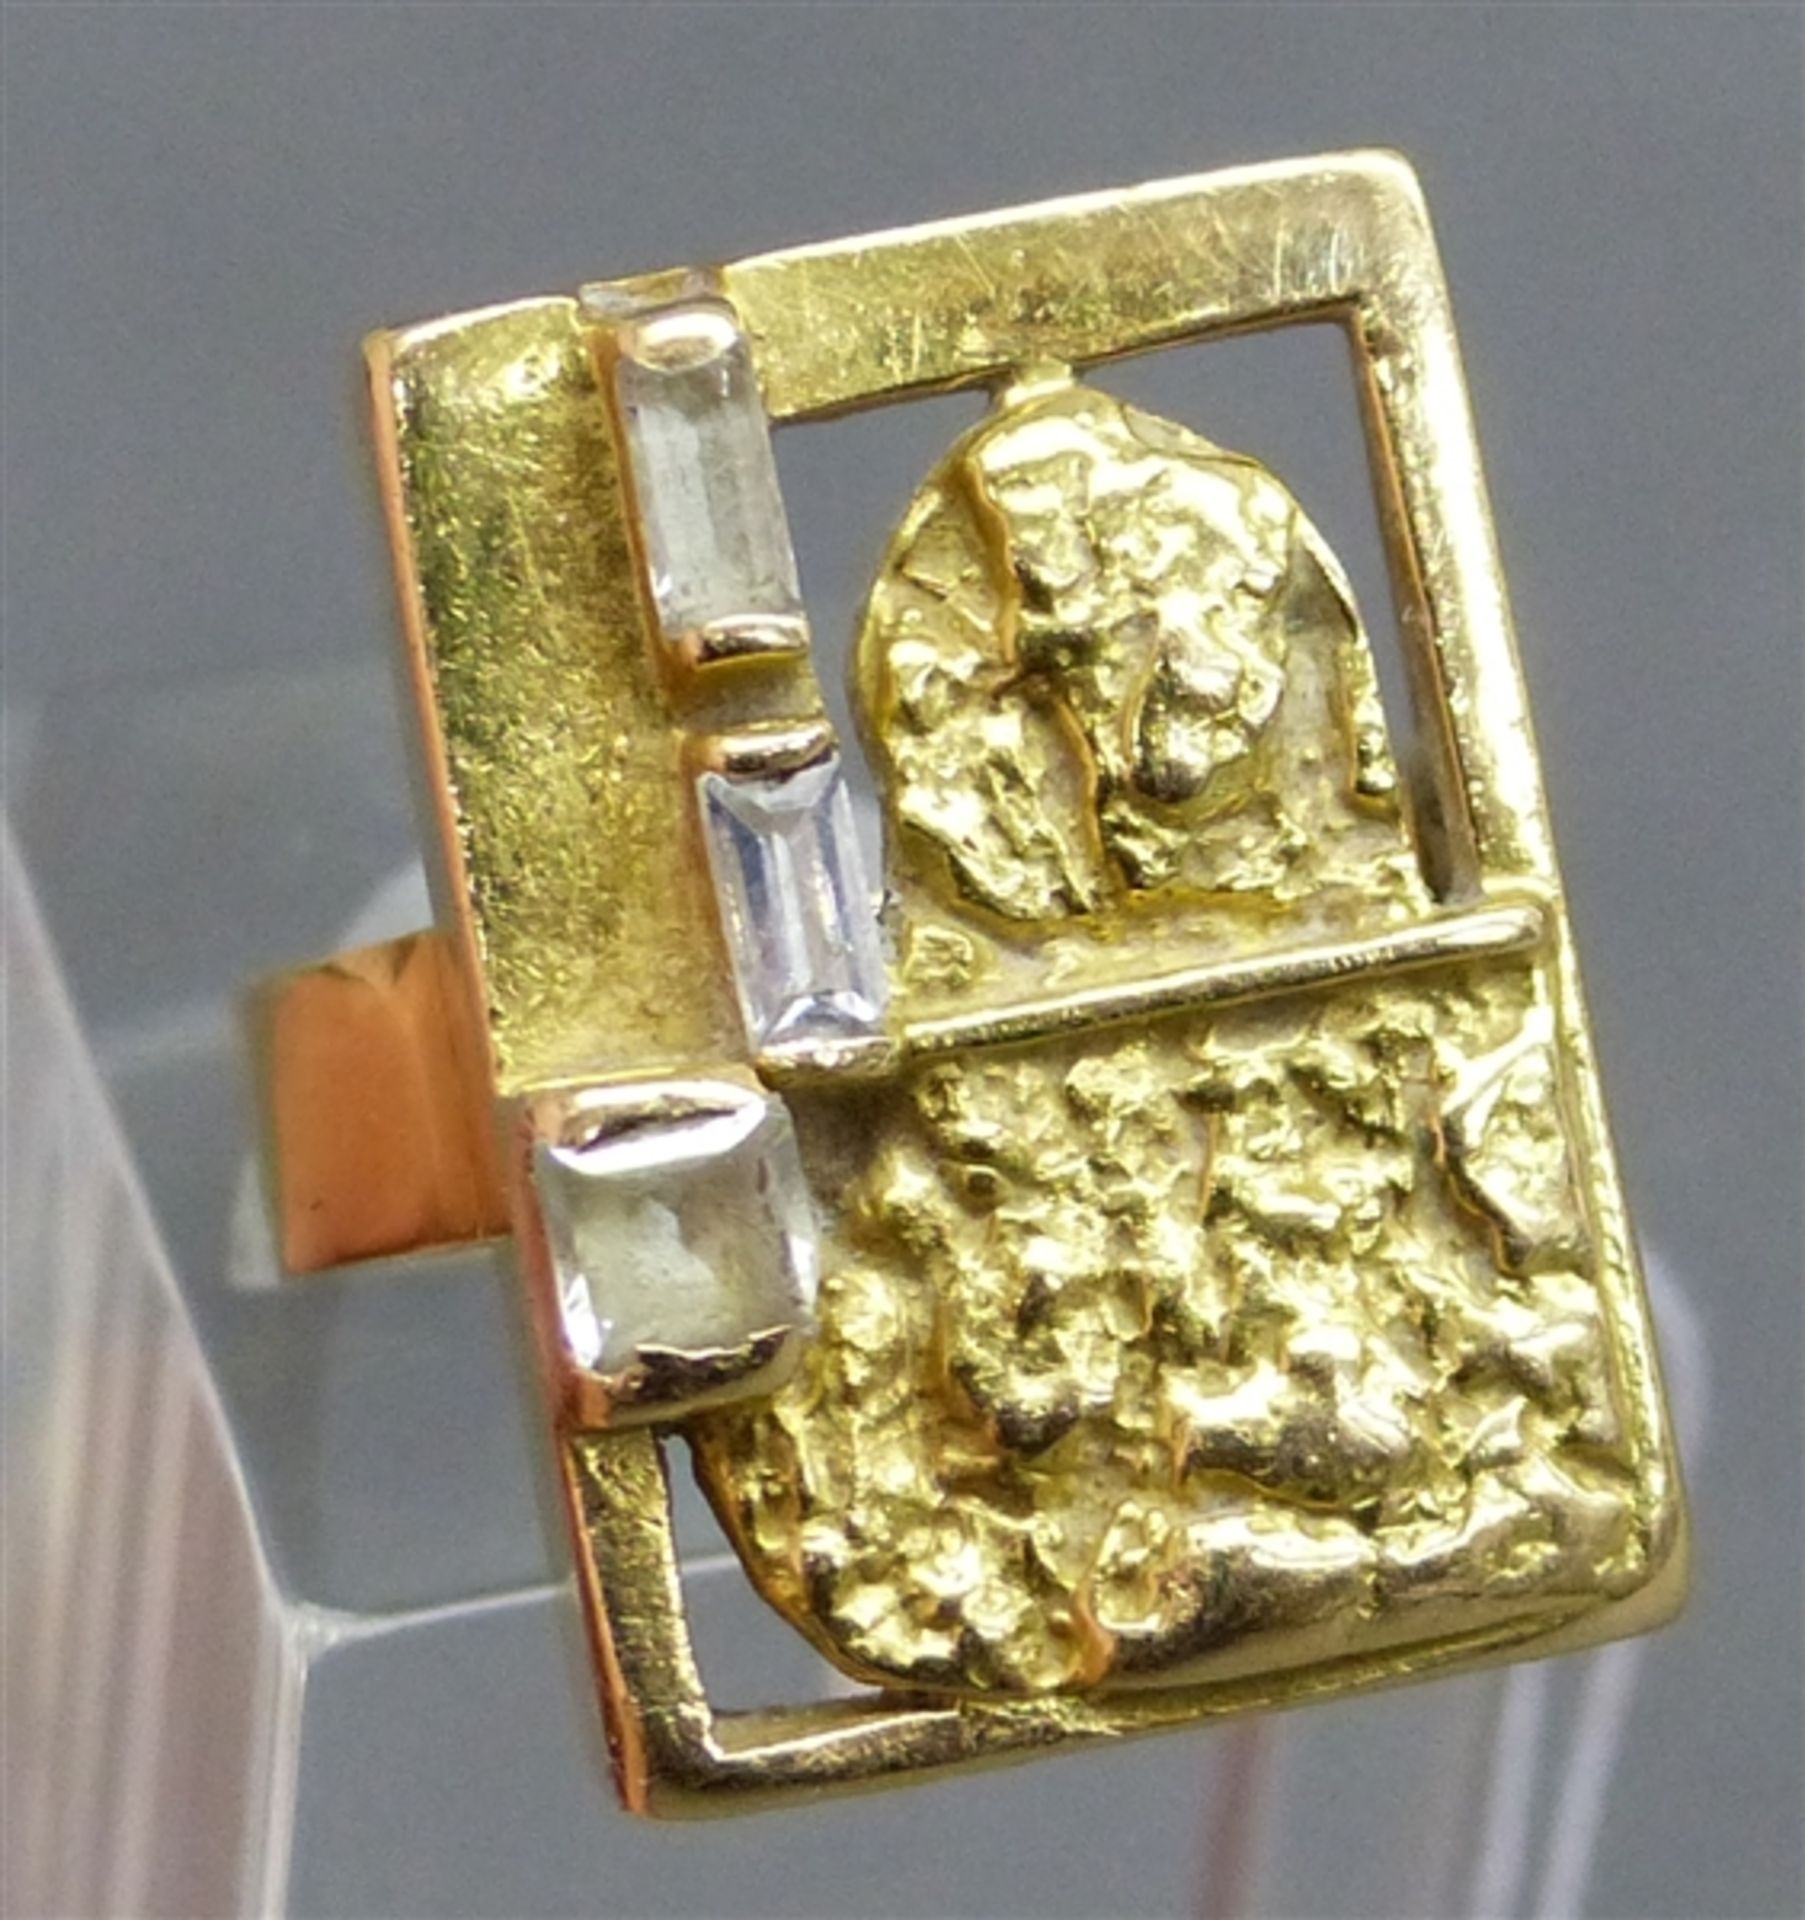 Damenring 18 kt. Gelbgold, 3 weiße Steine, teilweise durchbrochen gearbeitet, Designarbeit, ca. 11 g